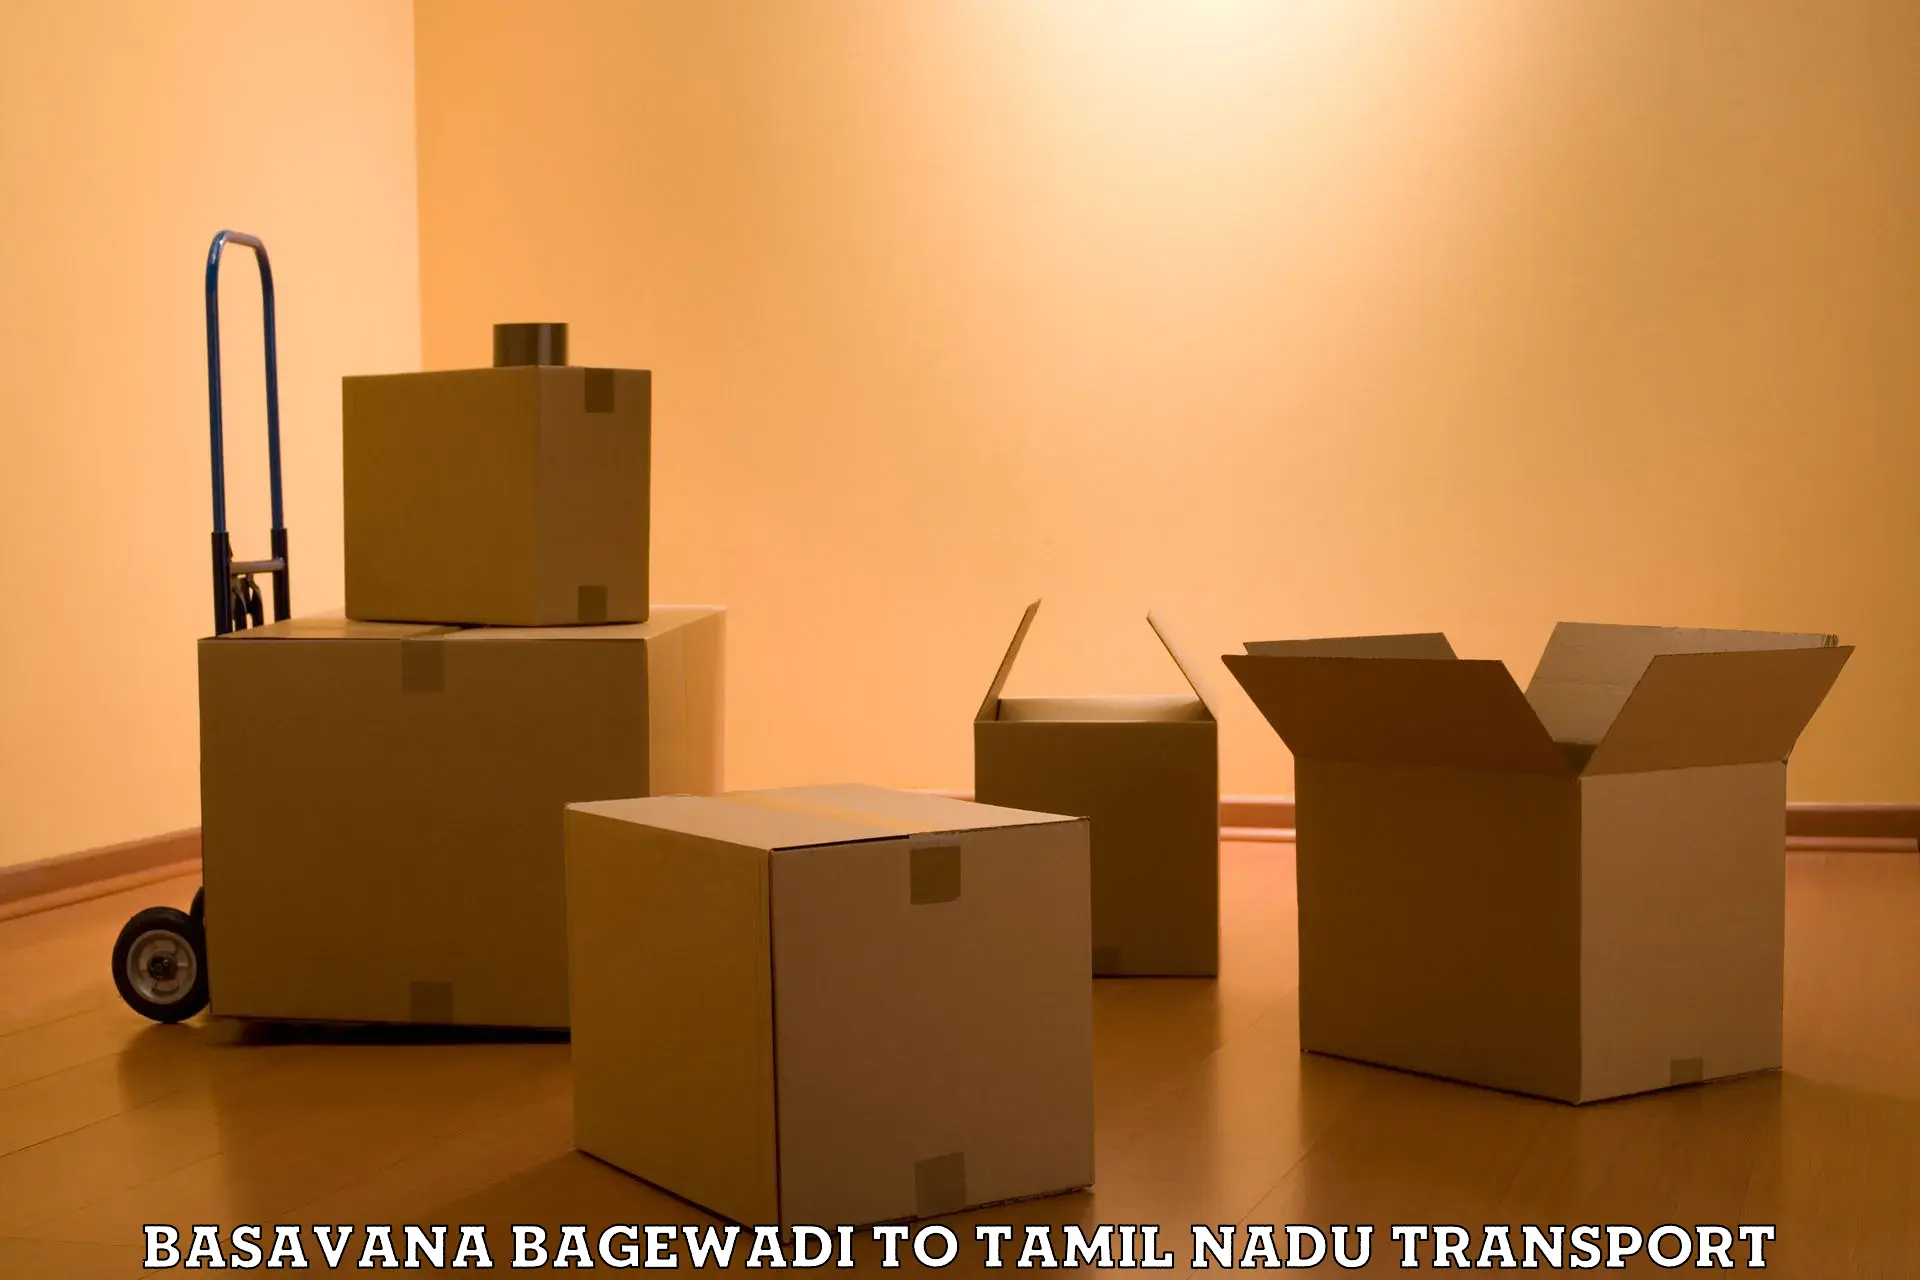 Cycle transportation service Basavana Bagewadi to Tamil Nadu